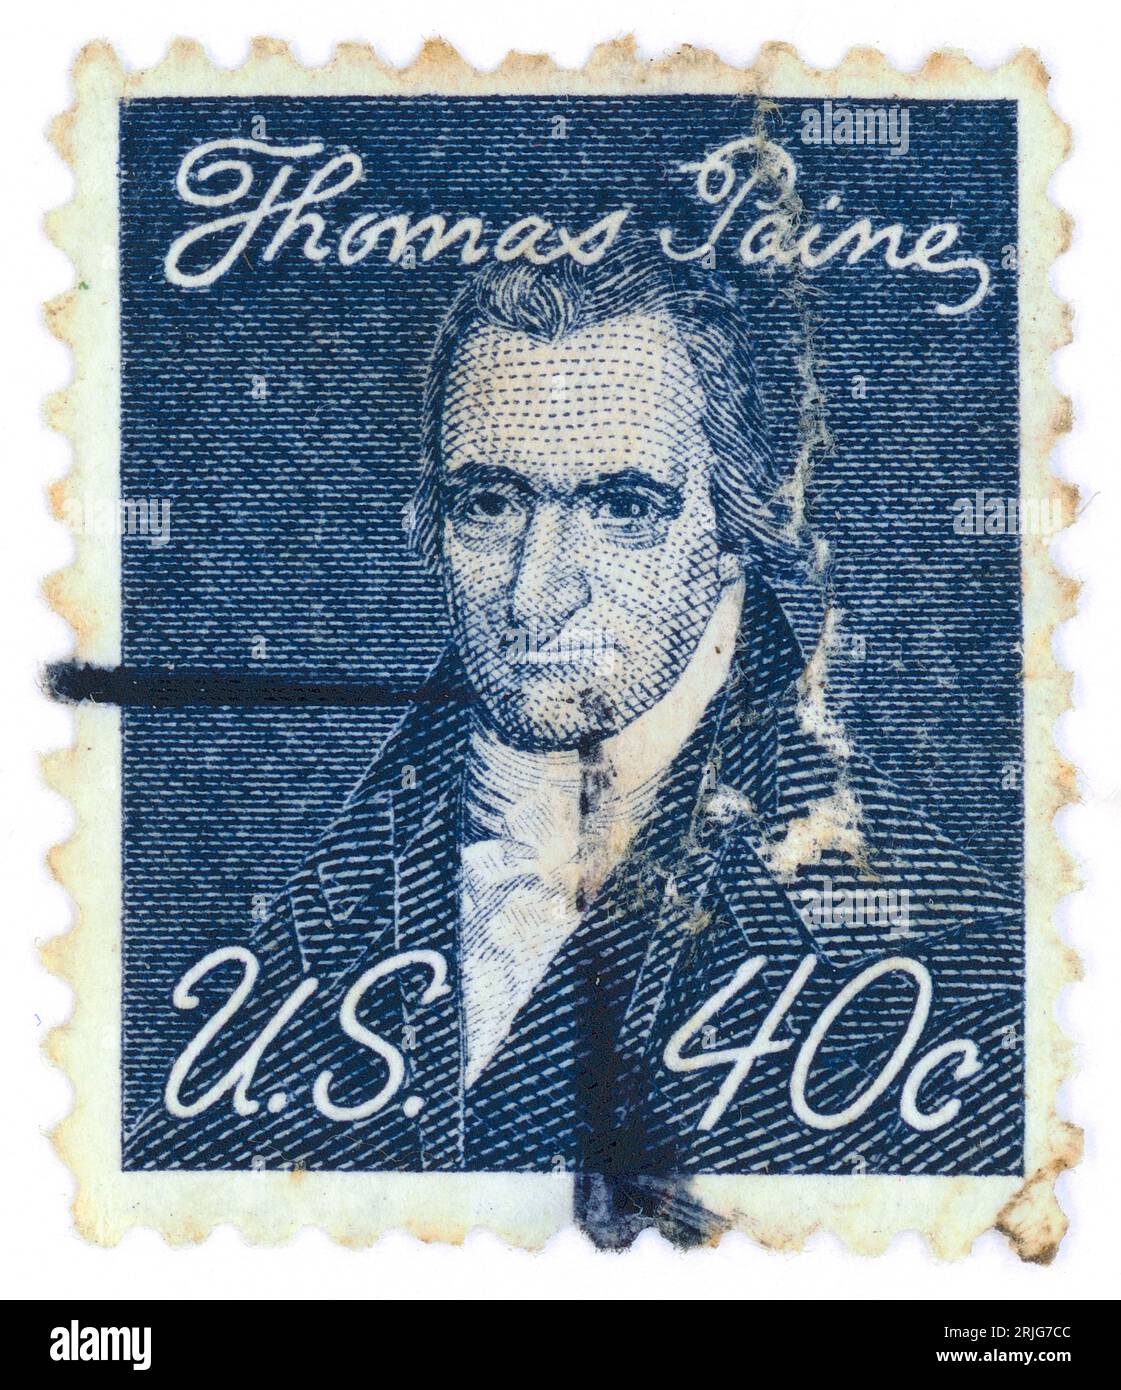 Thomas Paine (nato Thomas Pain; 1737 – 1809). Francobollo emesso negli Stati Uniti nel 1968. Thomas Paine era un padre fondatore americano nato in Inghilterra, attivista politico, filosofo, teorico politico e rivoluzionario. Fu autore di Common Sense (1776) e The American Crisis (1776-1783), due dei più influenti opuscoli all'inizio della rivoluzione americana, e contribuì a ispirare i patrioti nel 1776 a dichiarare l'indipendenza dalla Gran Bretagna. Le sue idee riflettevano gli ideali dei diritti umani dell'epoca dell'Illuminismo. Foto Stock